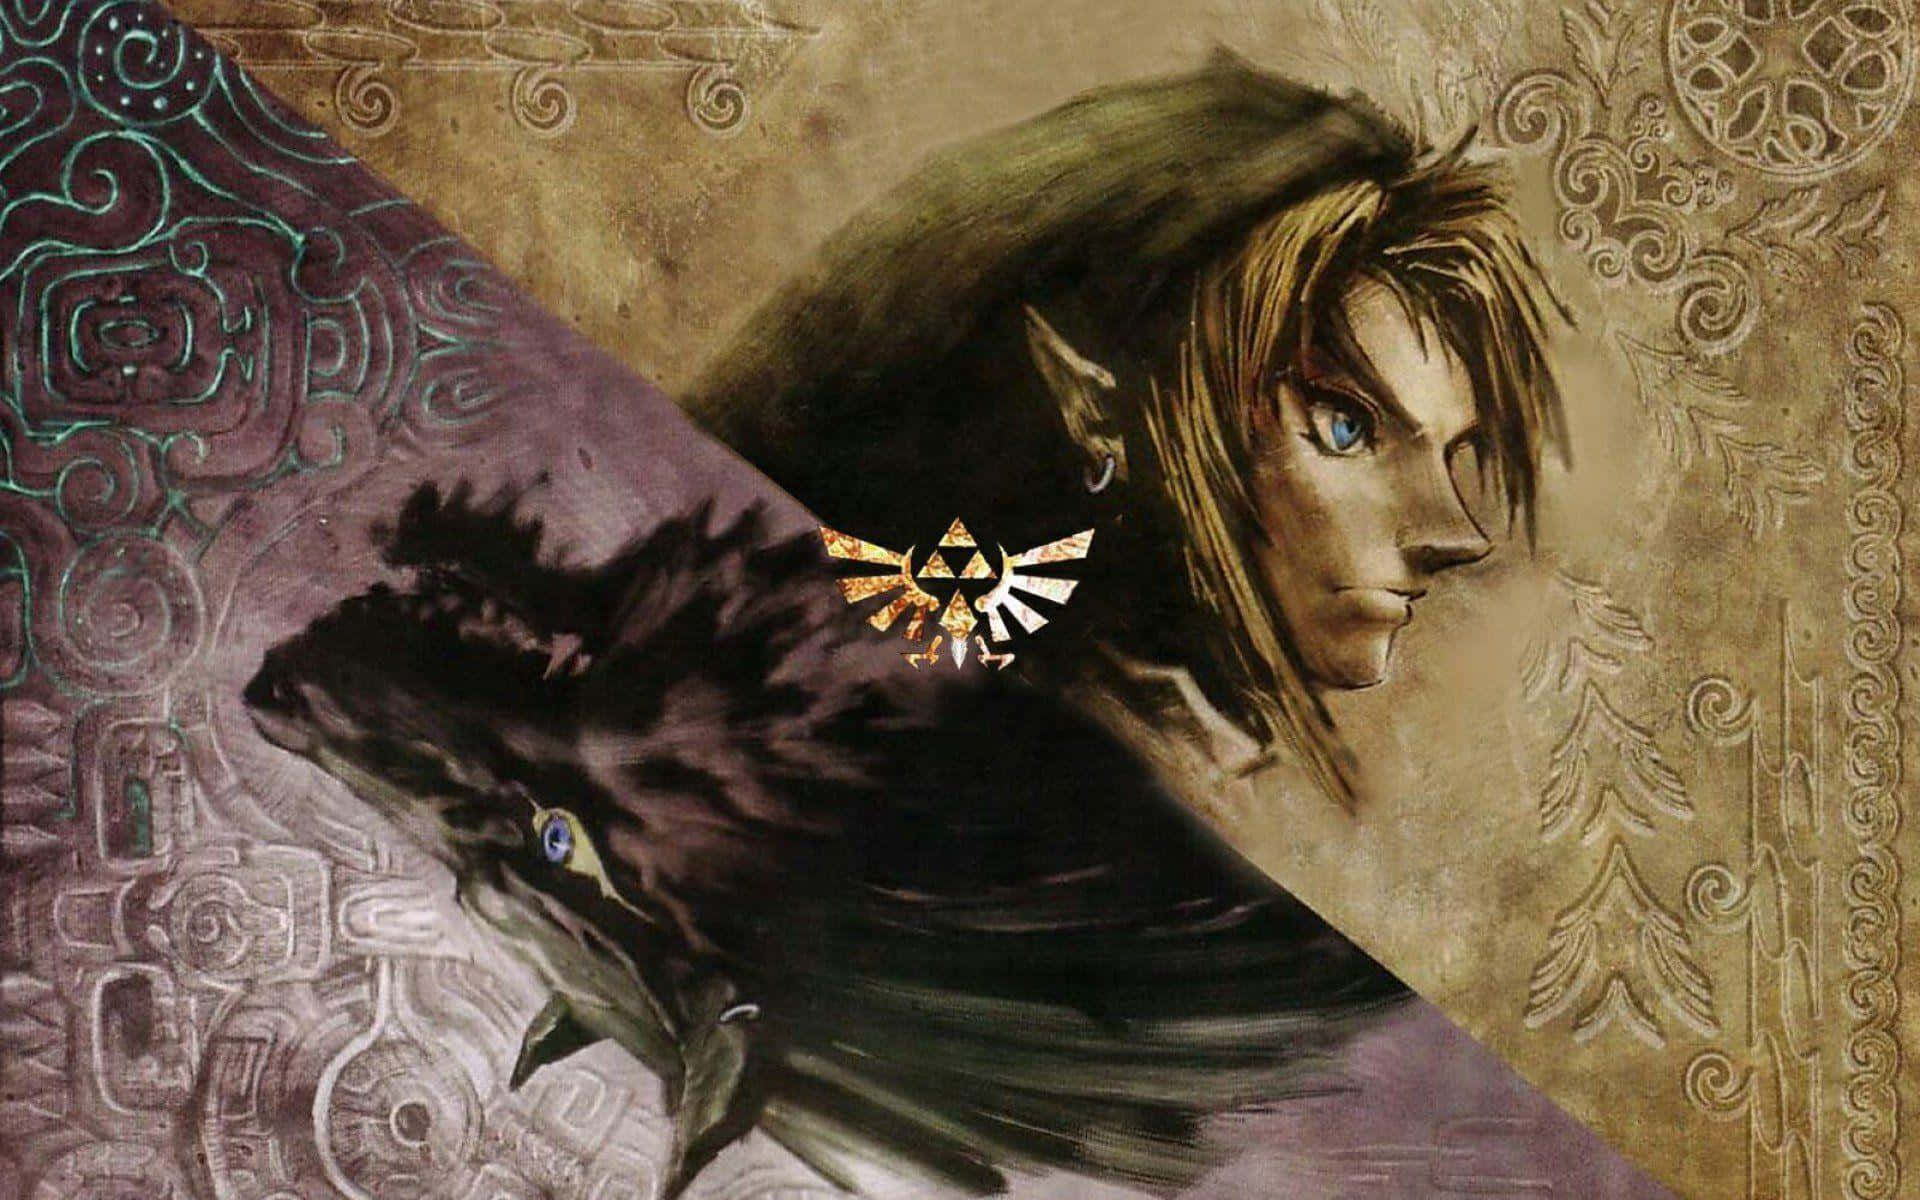 100+] Legend Of Zelda Twilight Princess Wallpapers 